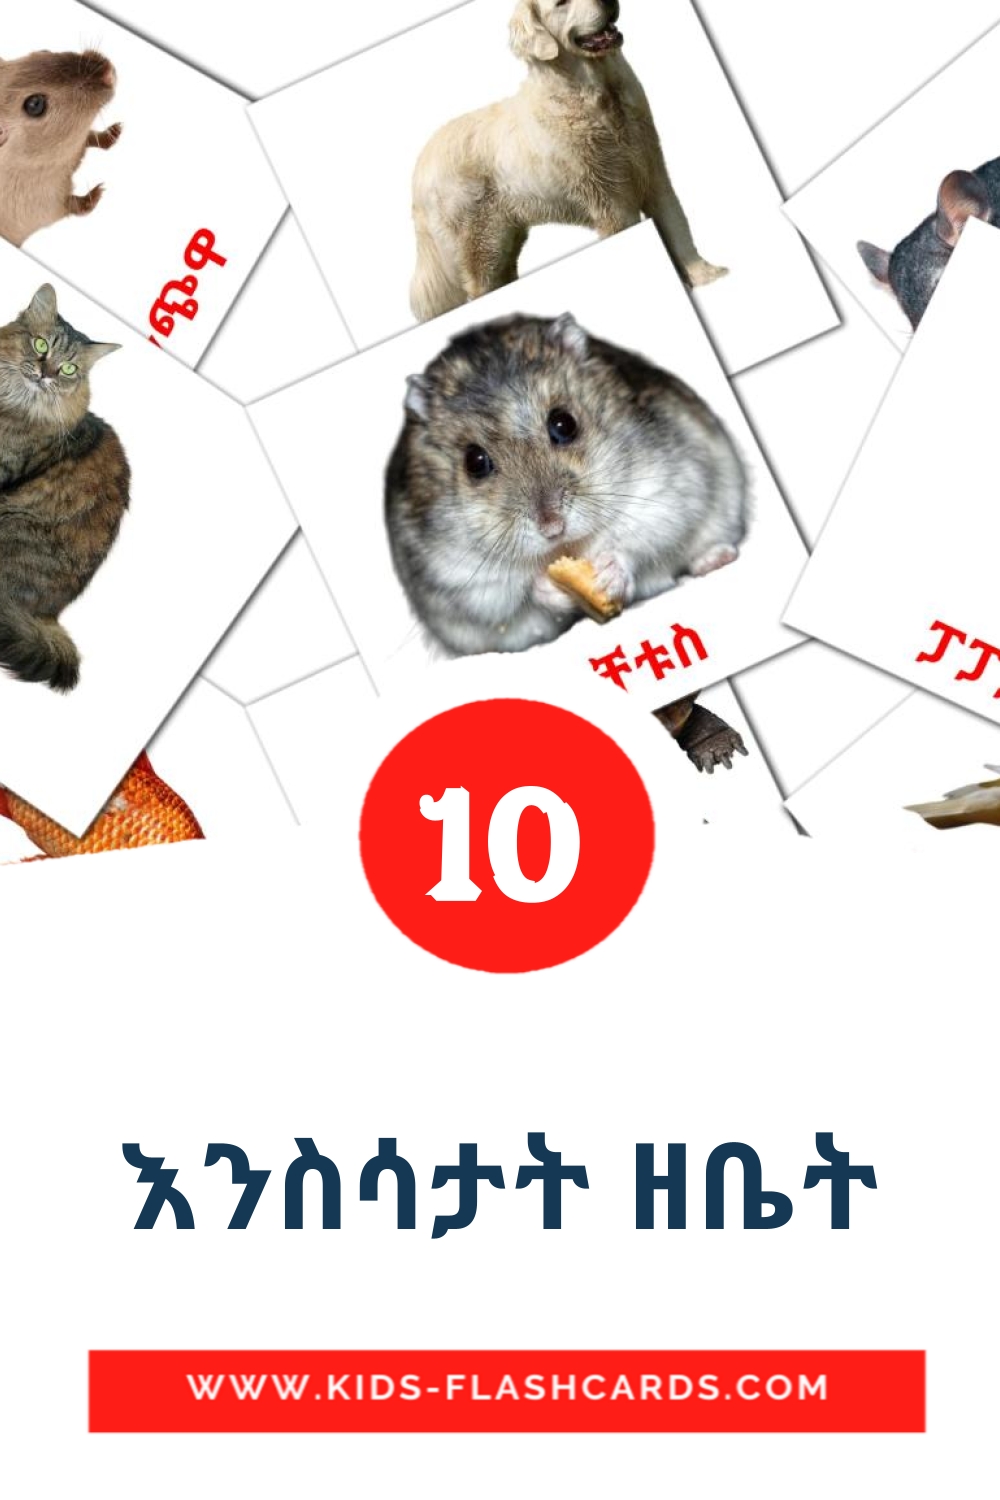 እንስሳታት ዘቤት на тигринья(Эритреи) для Детского Сада (10 карточек)